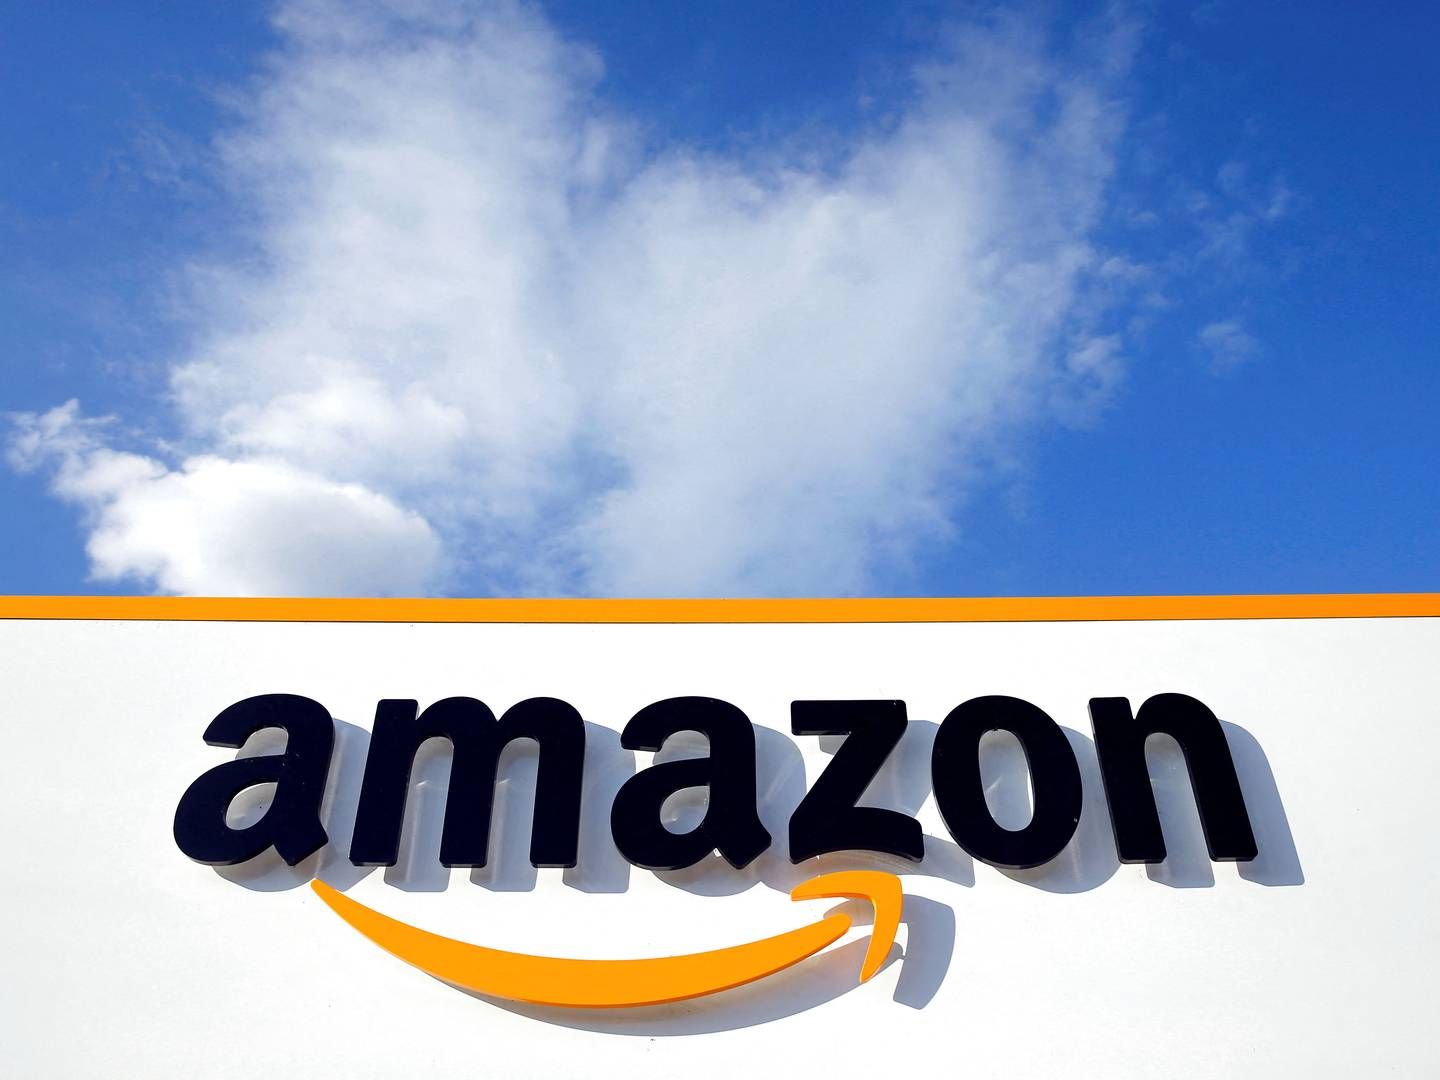 Amazon har bredt sig over en lang række aktiviteter, herunder streaming. | Foto: Pascal Rossignol/Reuters/Ritzau Scanpix